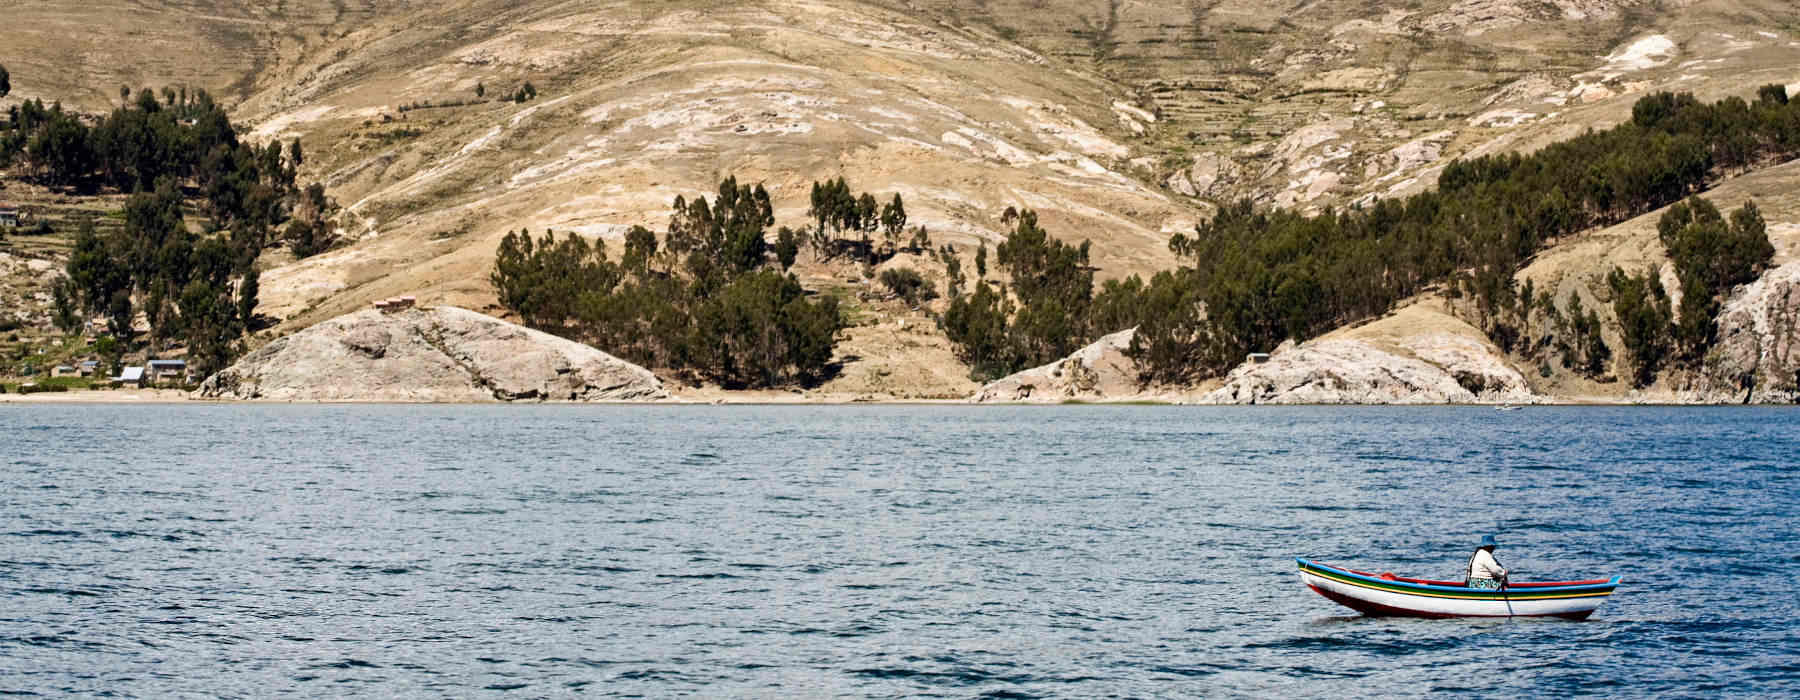 La Paz & Lake Titicaca<br class="hidden-md hidden-lg" /> Holidays